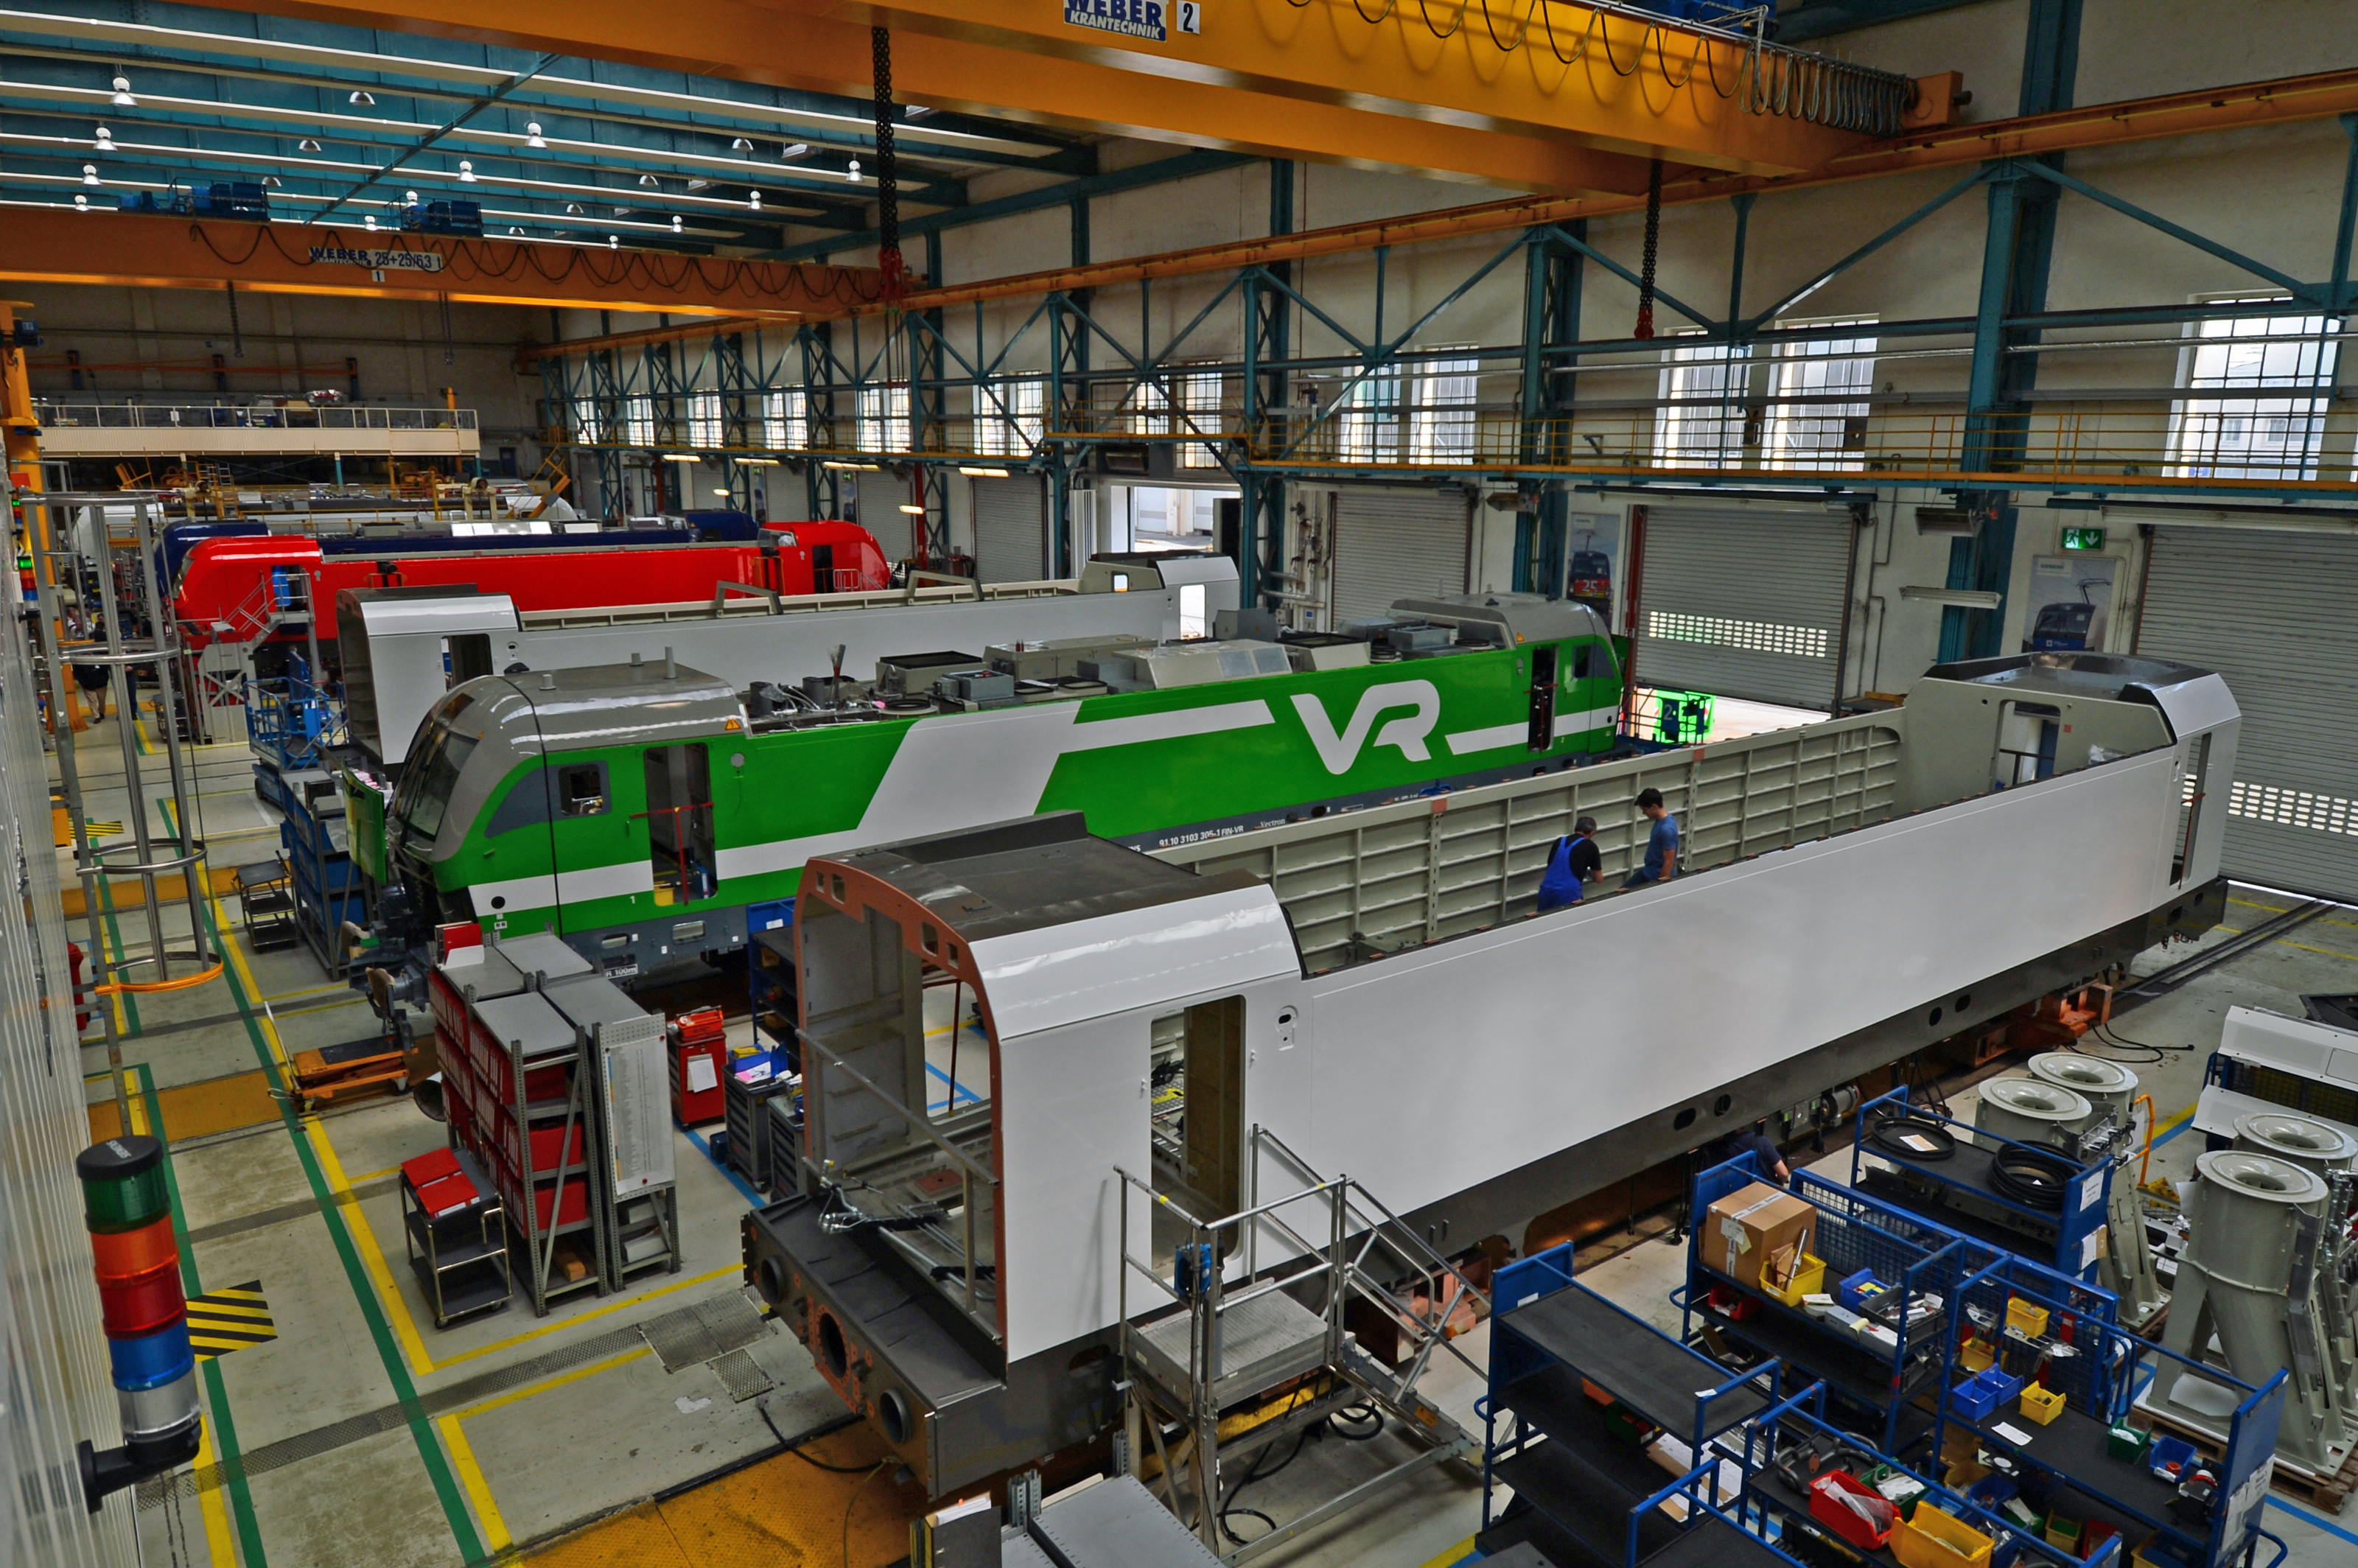 DG246897. Siemens Vectron production line. Munich. Germany. 27.6.16